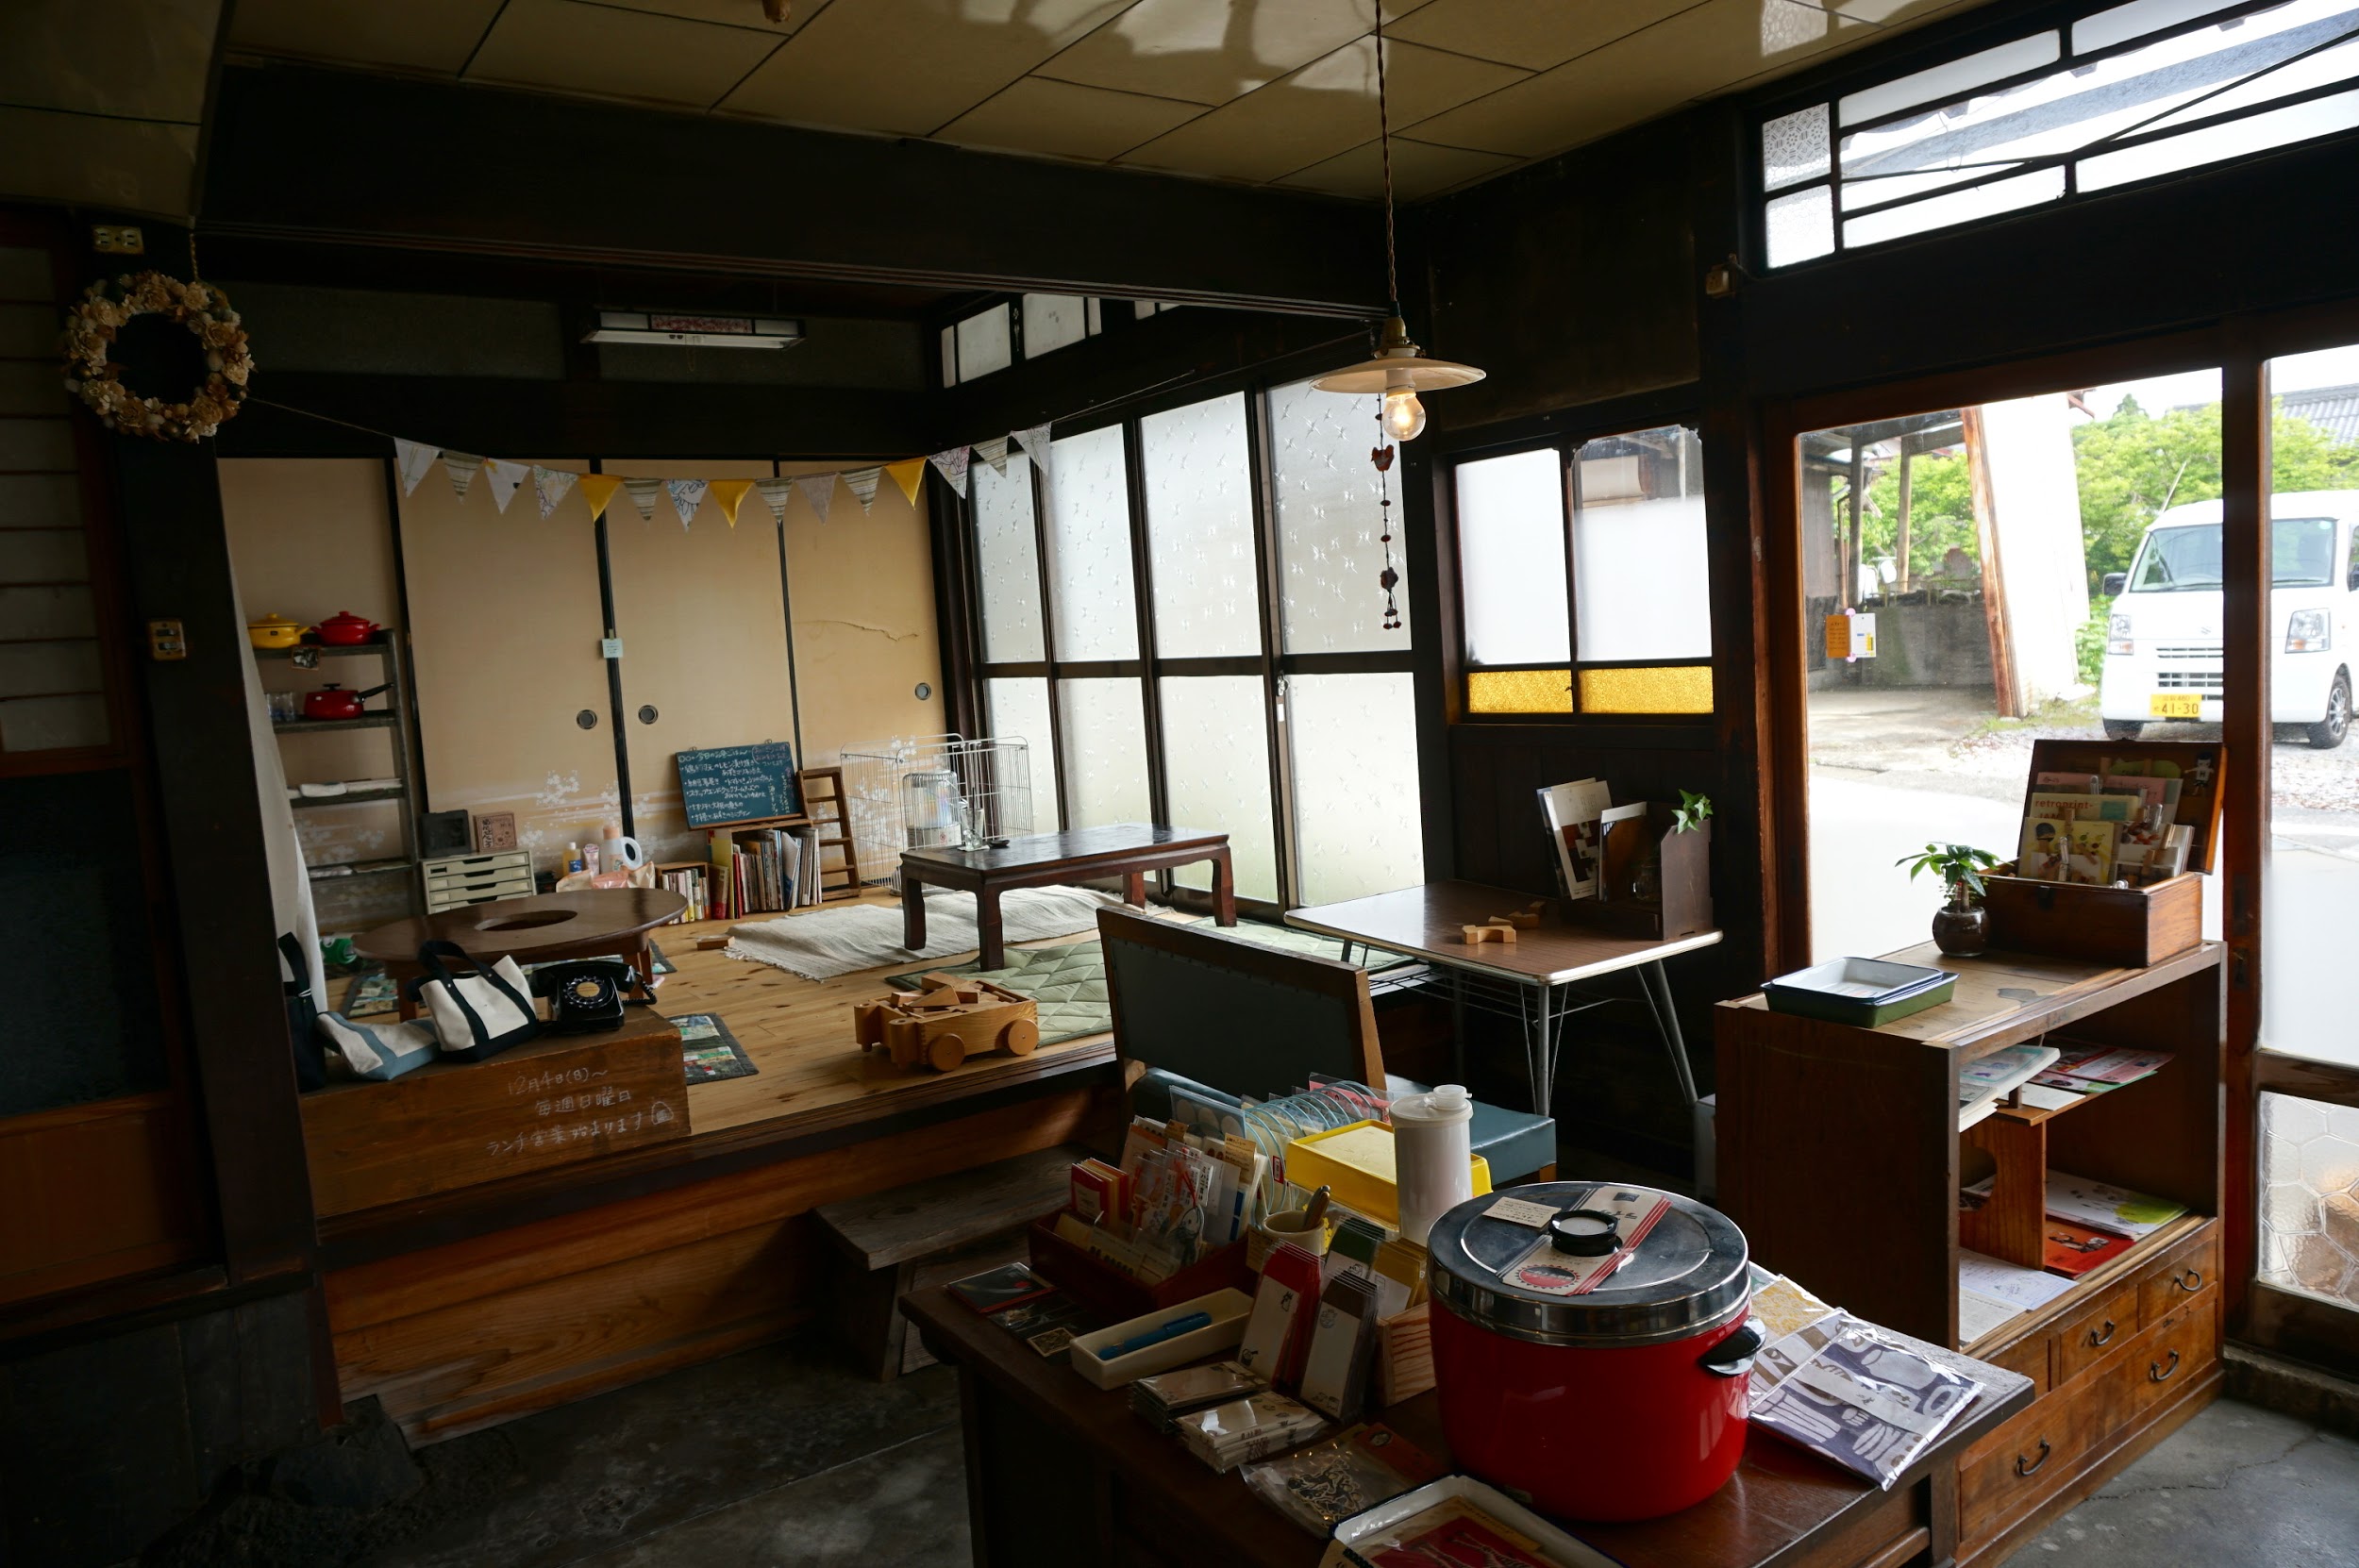 米原市の「佐々木文具店」の営業日は週2日。それでも行く価値アリのお店です。カフェスペースもありますよ。